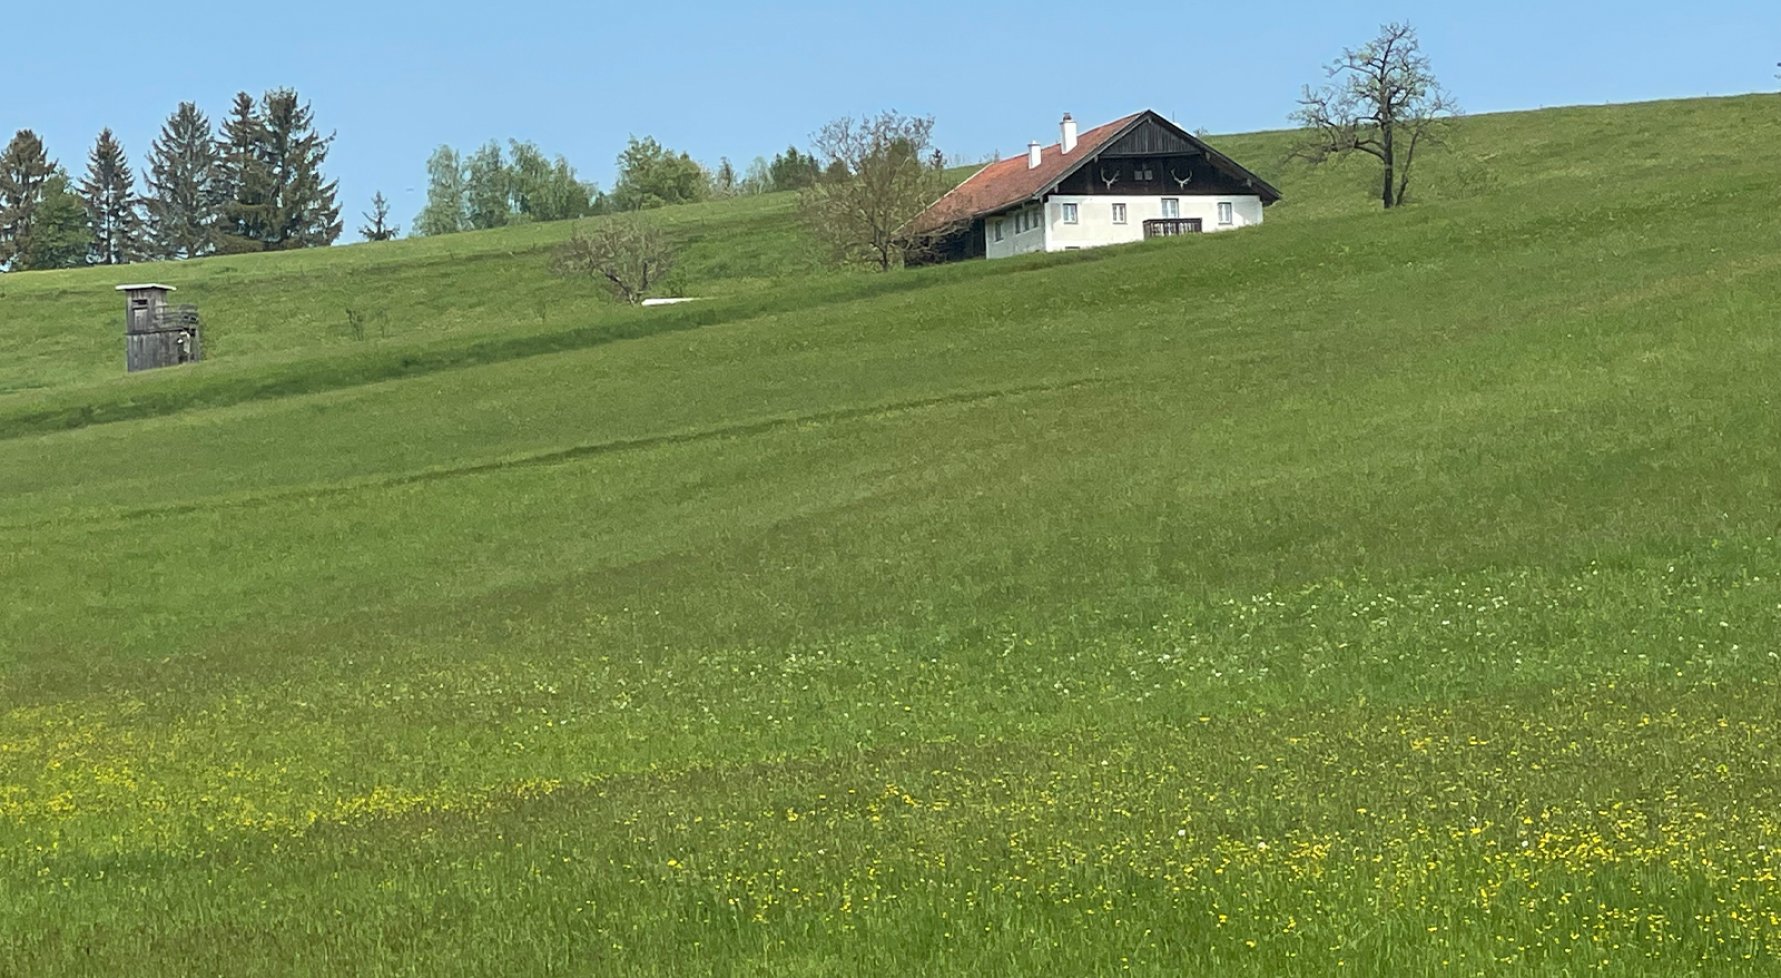 Immobilie in 4920 Kobernaußer Wald : Schönes, saniertes Bauernsacherl in Alleinlage! - bild 1